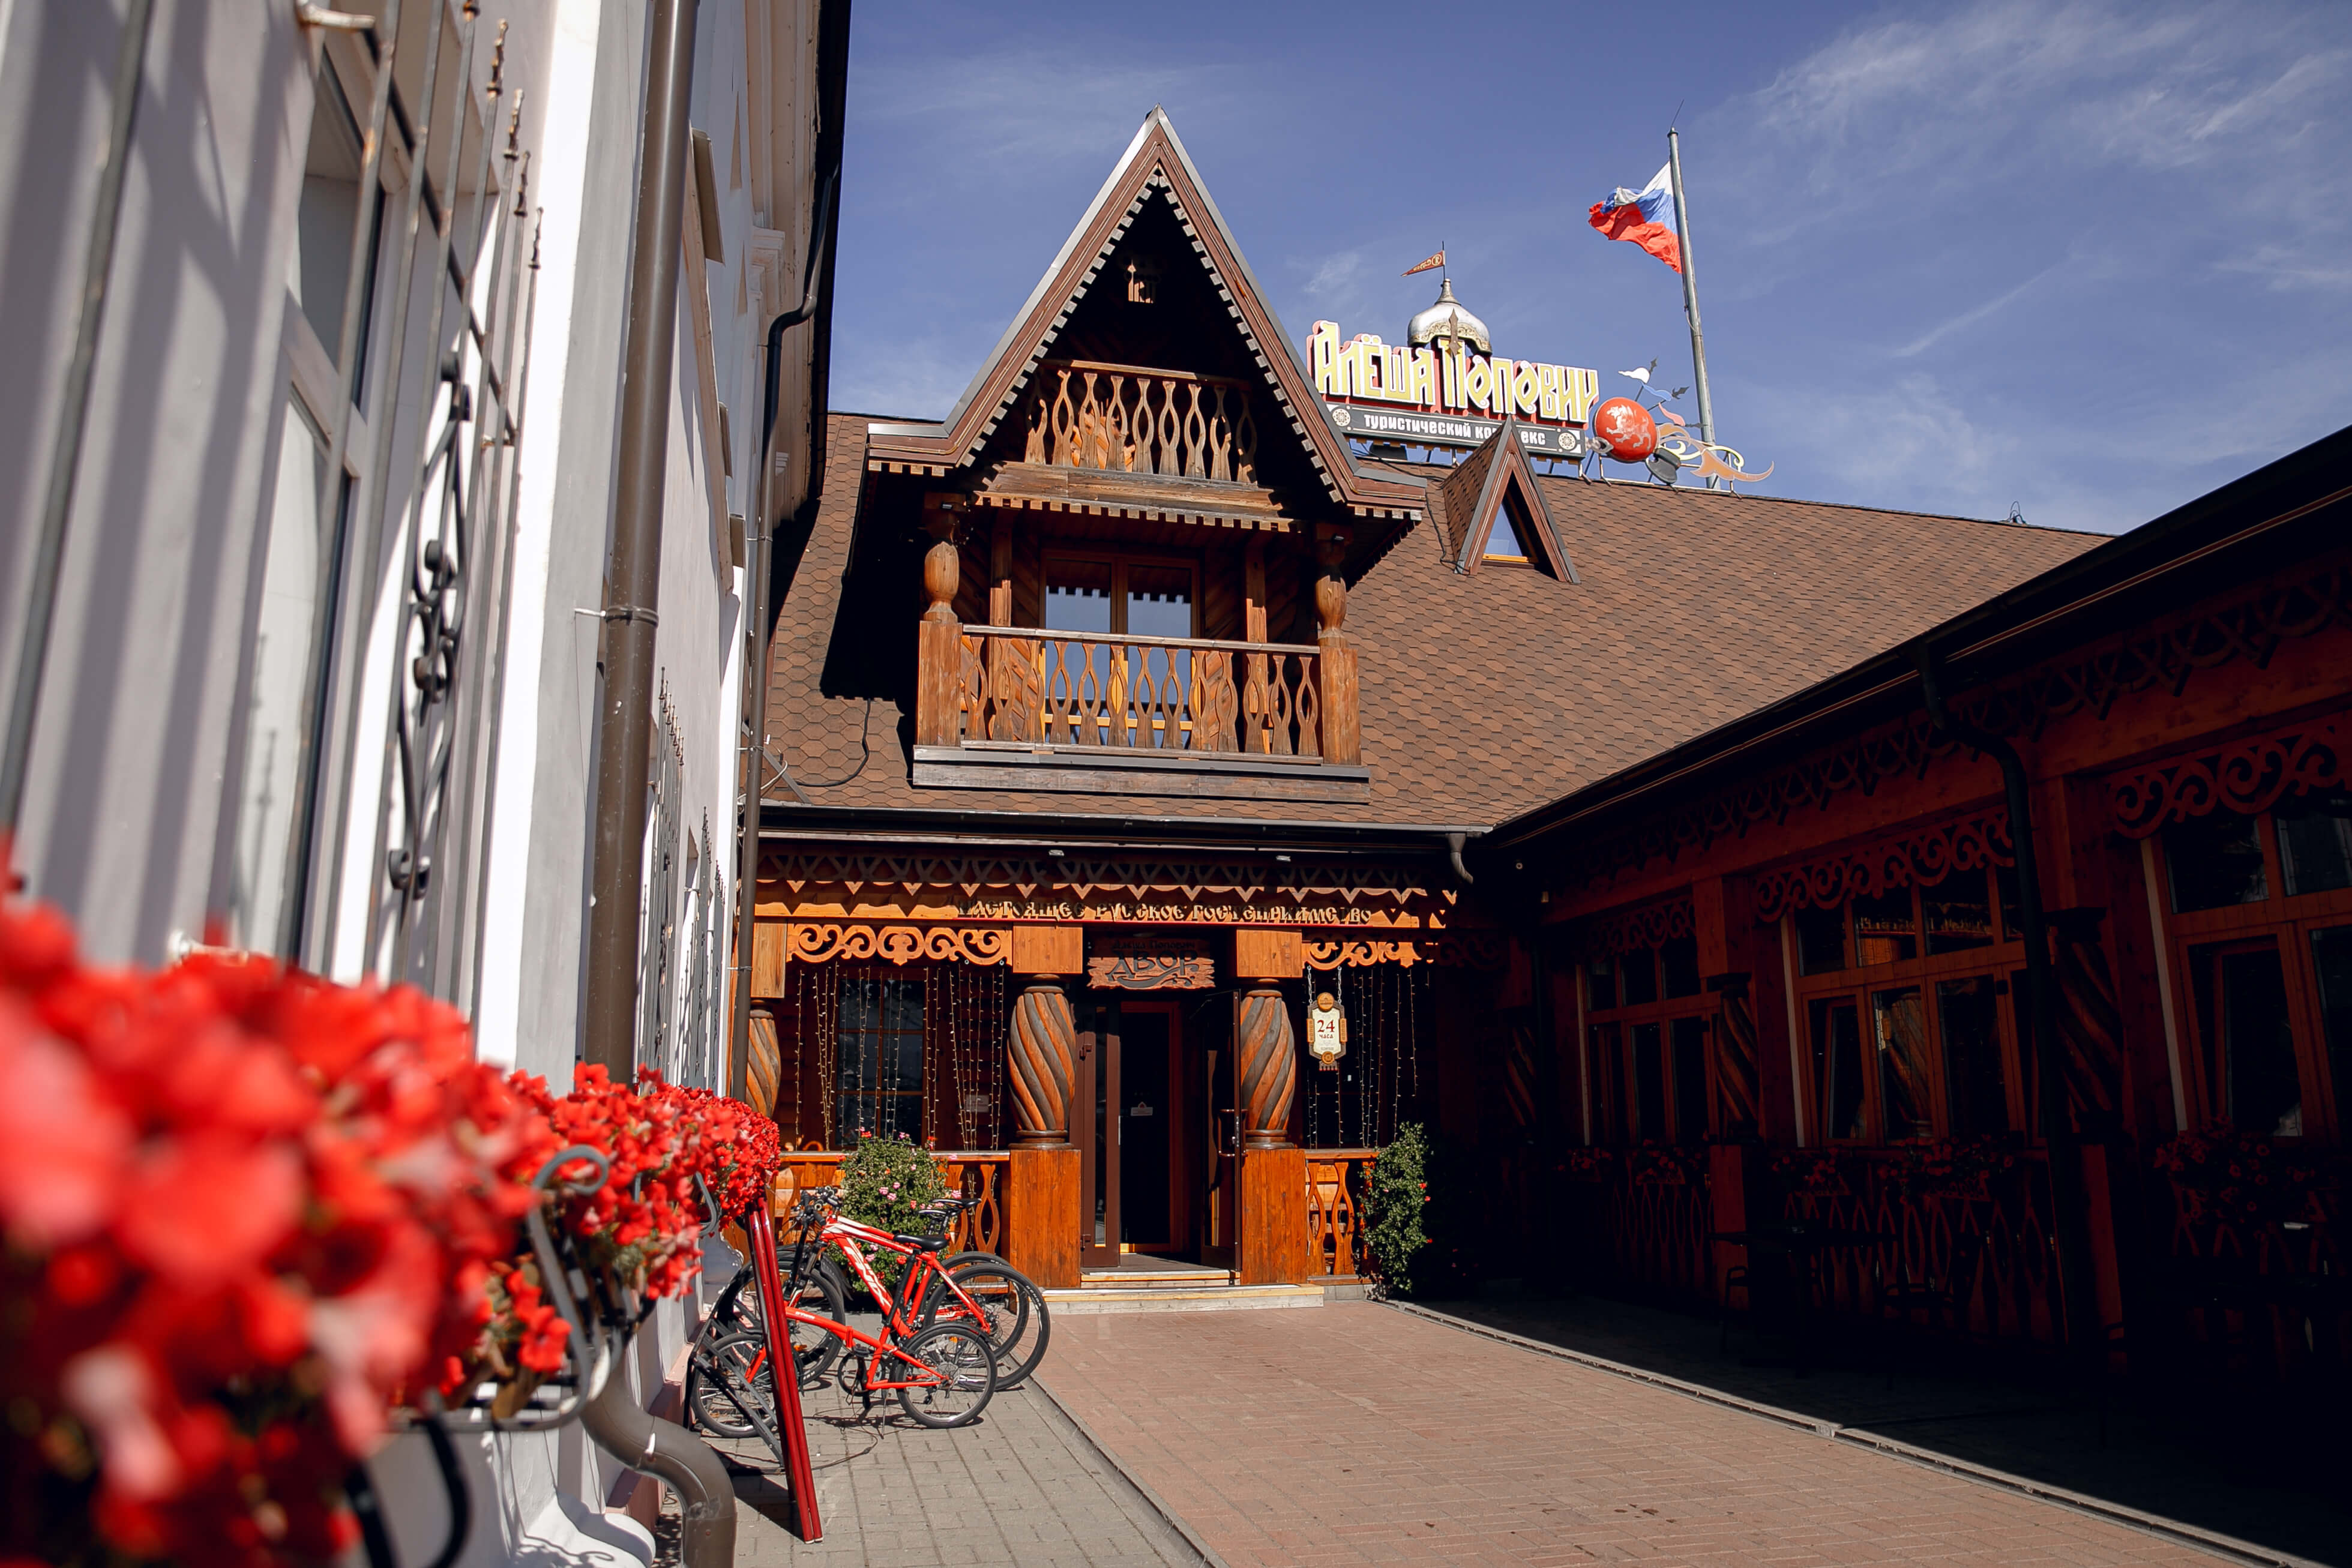 Внутренний двор. Фасад отеля в стиле русского деревянного зодчества.